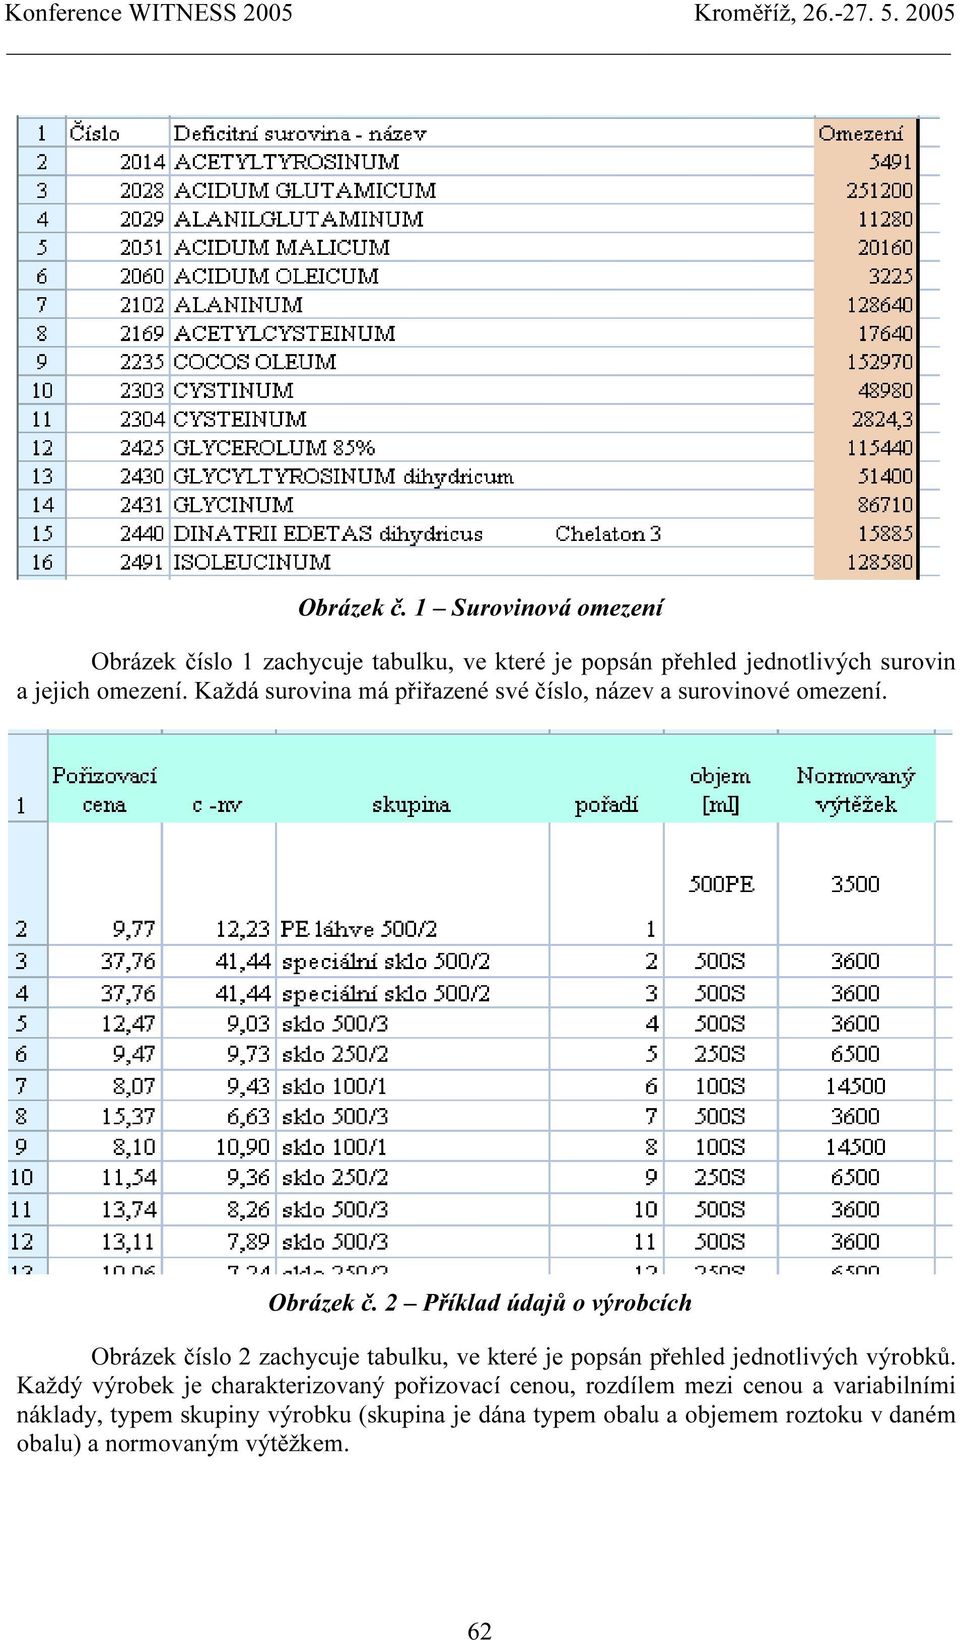 2 Příklad údajů o výrobcích Obrázek číslo 2 zachycuje tabulku, ve které je popsán přehled jednotlivých výrobků.